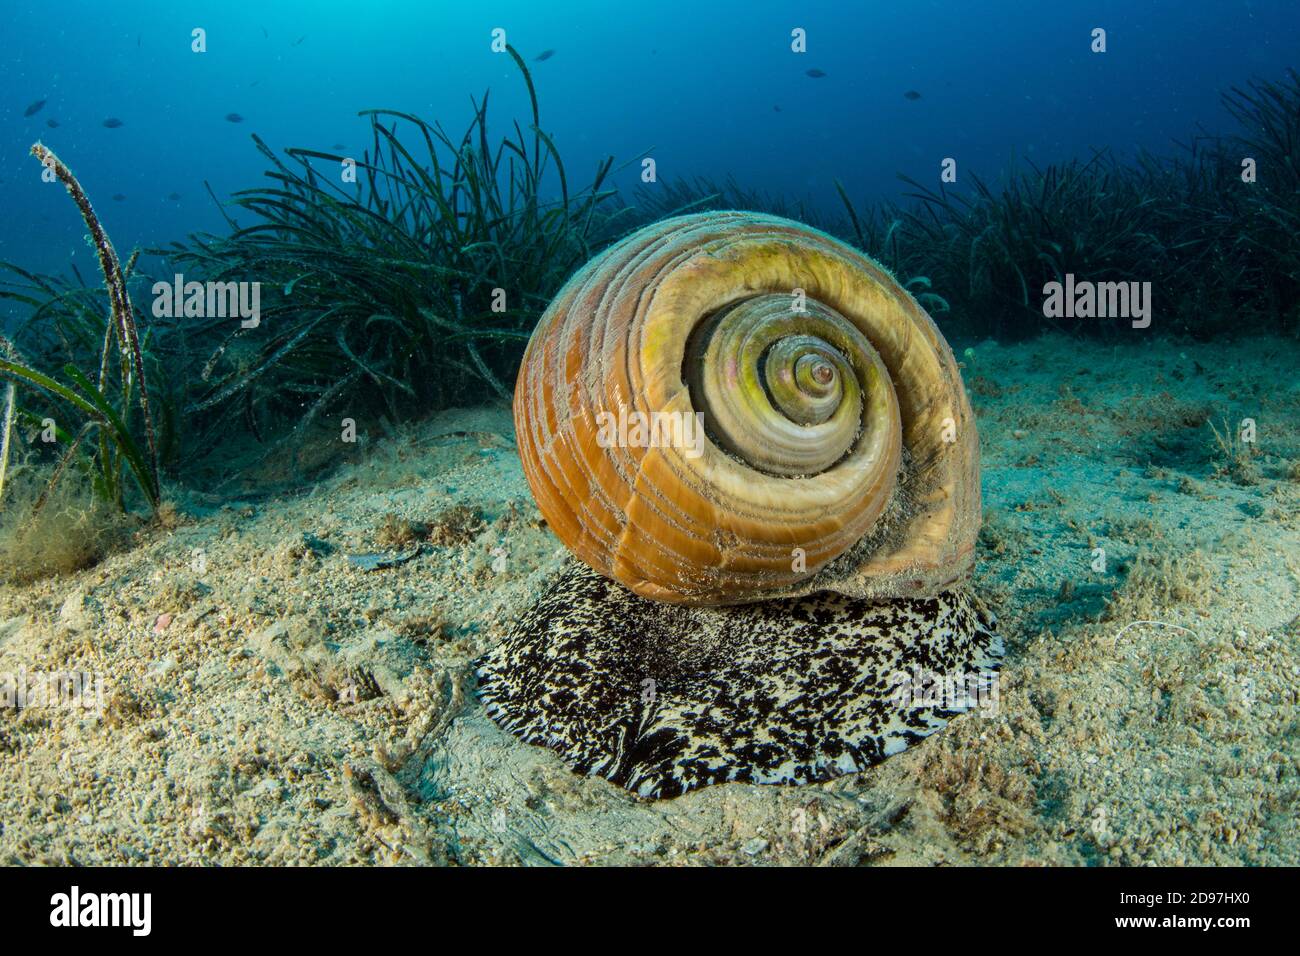 Riesenmuschel (Tonna galea) ist eine Art von Meeresschnecke, eine der größten Schnecken im Mittelmeer, Insel Vis, Kroatien, Adria Stockfoto